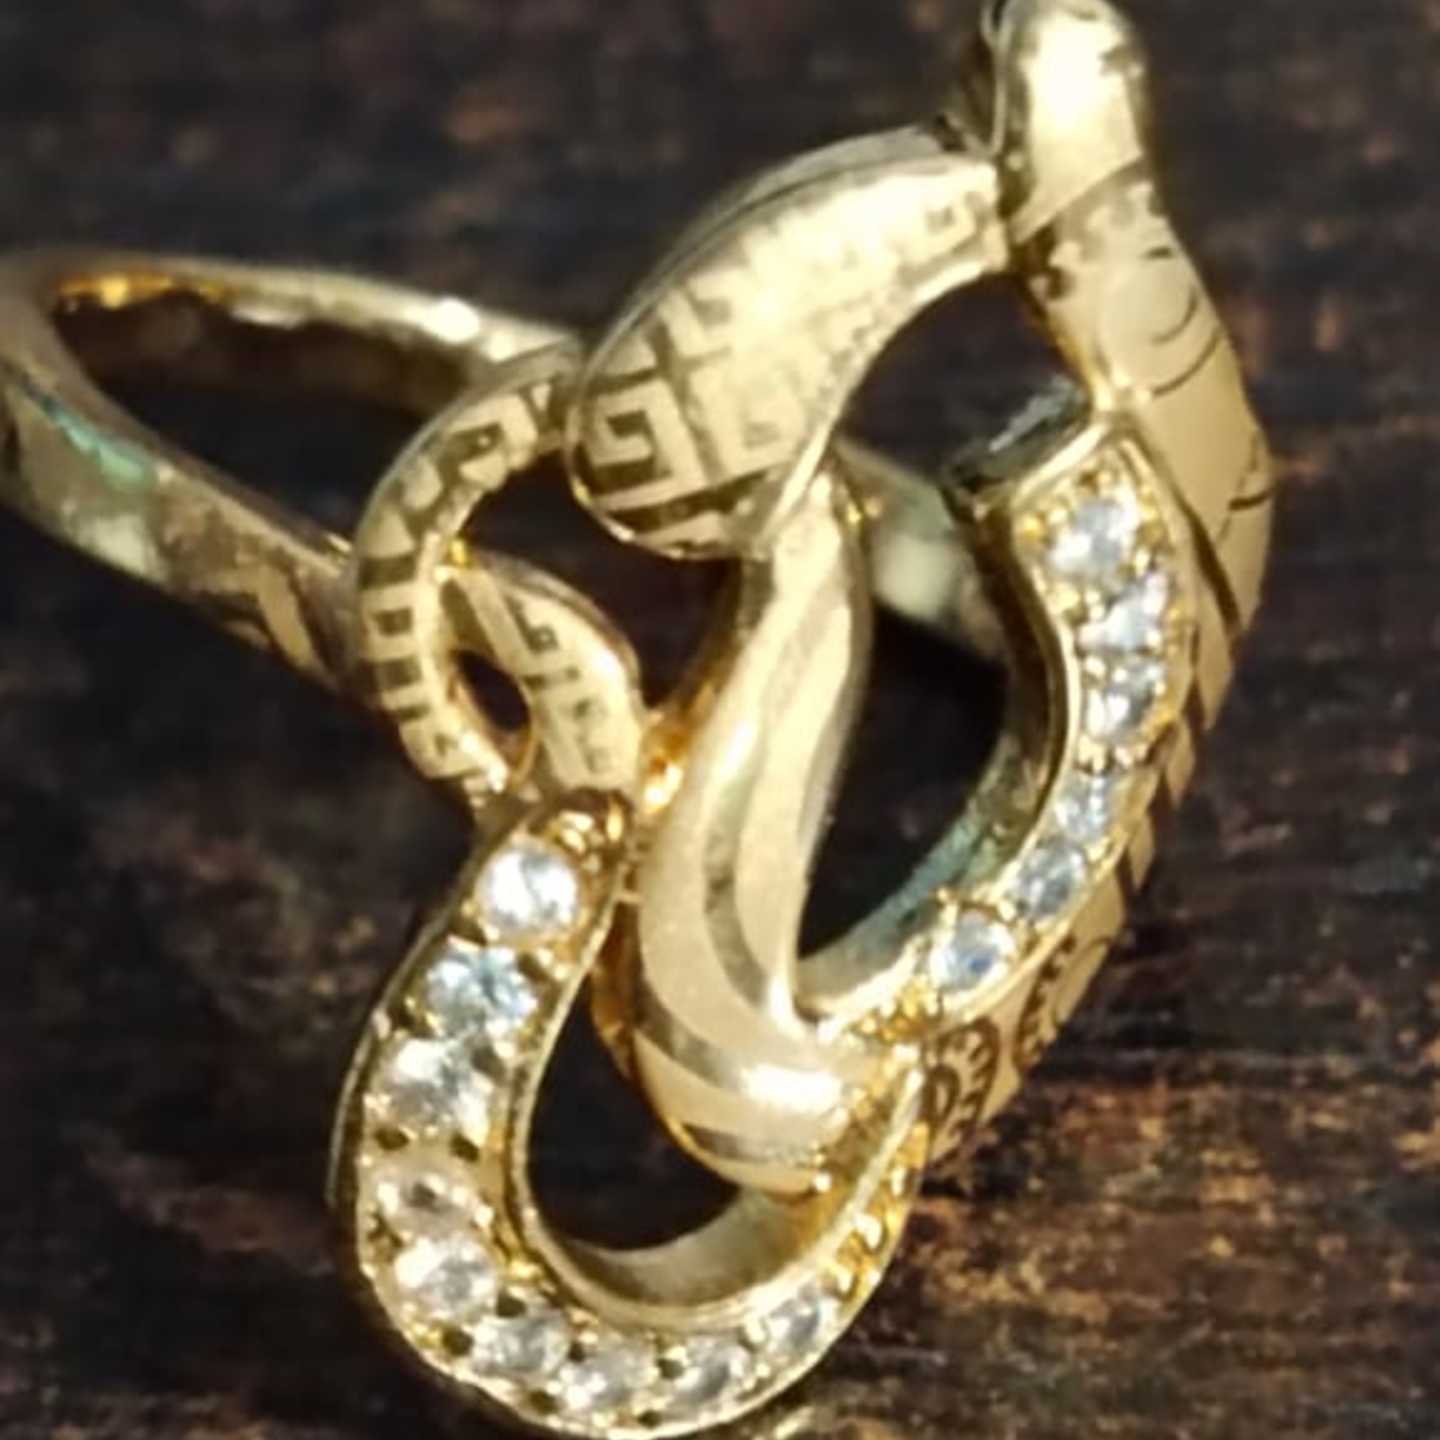 Premium AD Rose Gold Ring